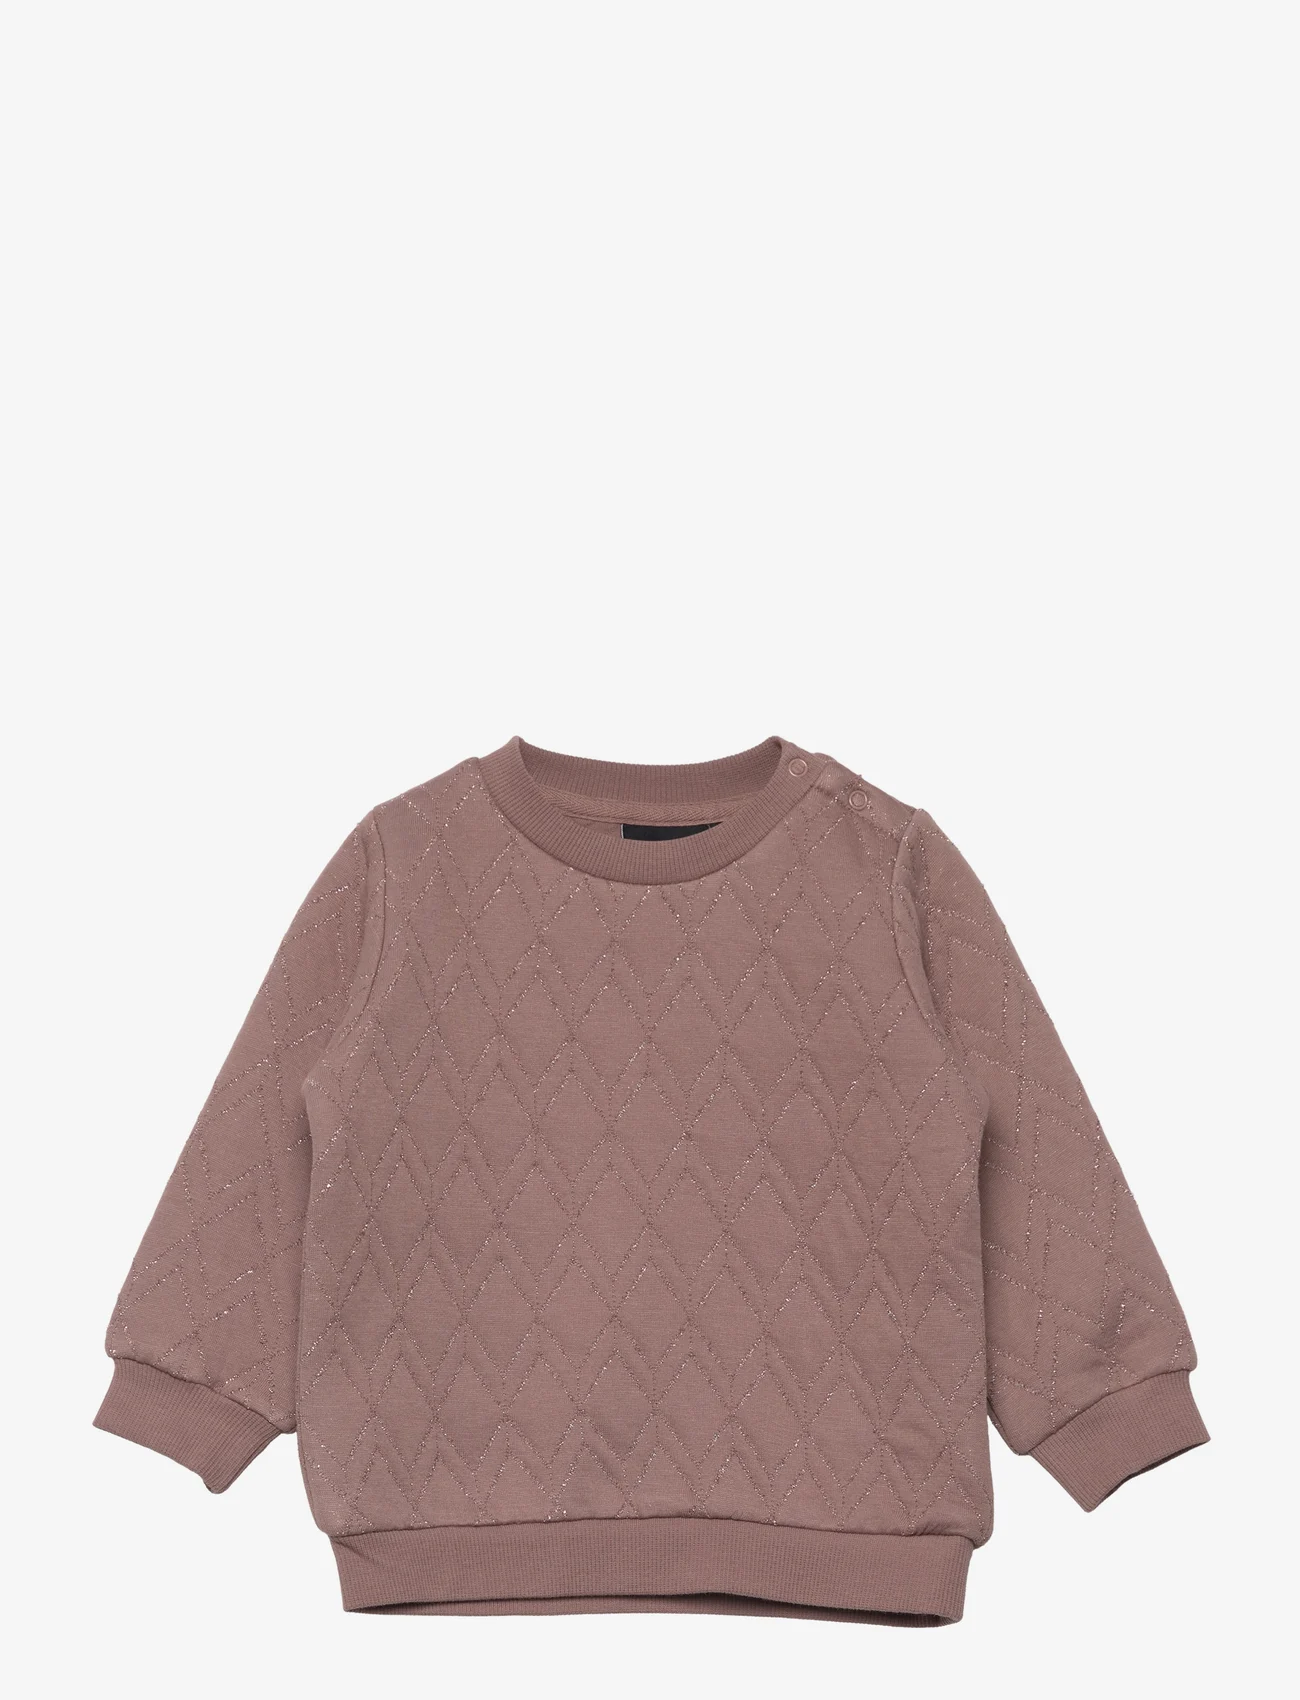 Sofie Schnoor Baby and Kids - Sweatshirt - warm brown - 0